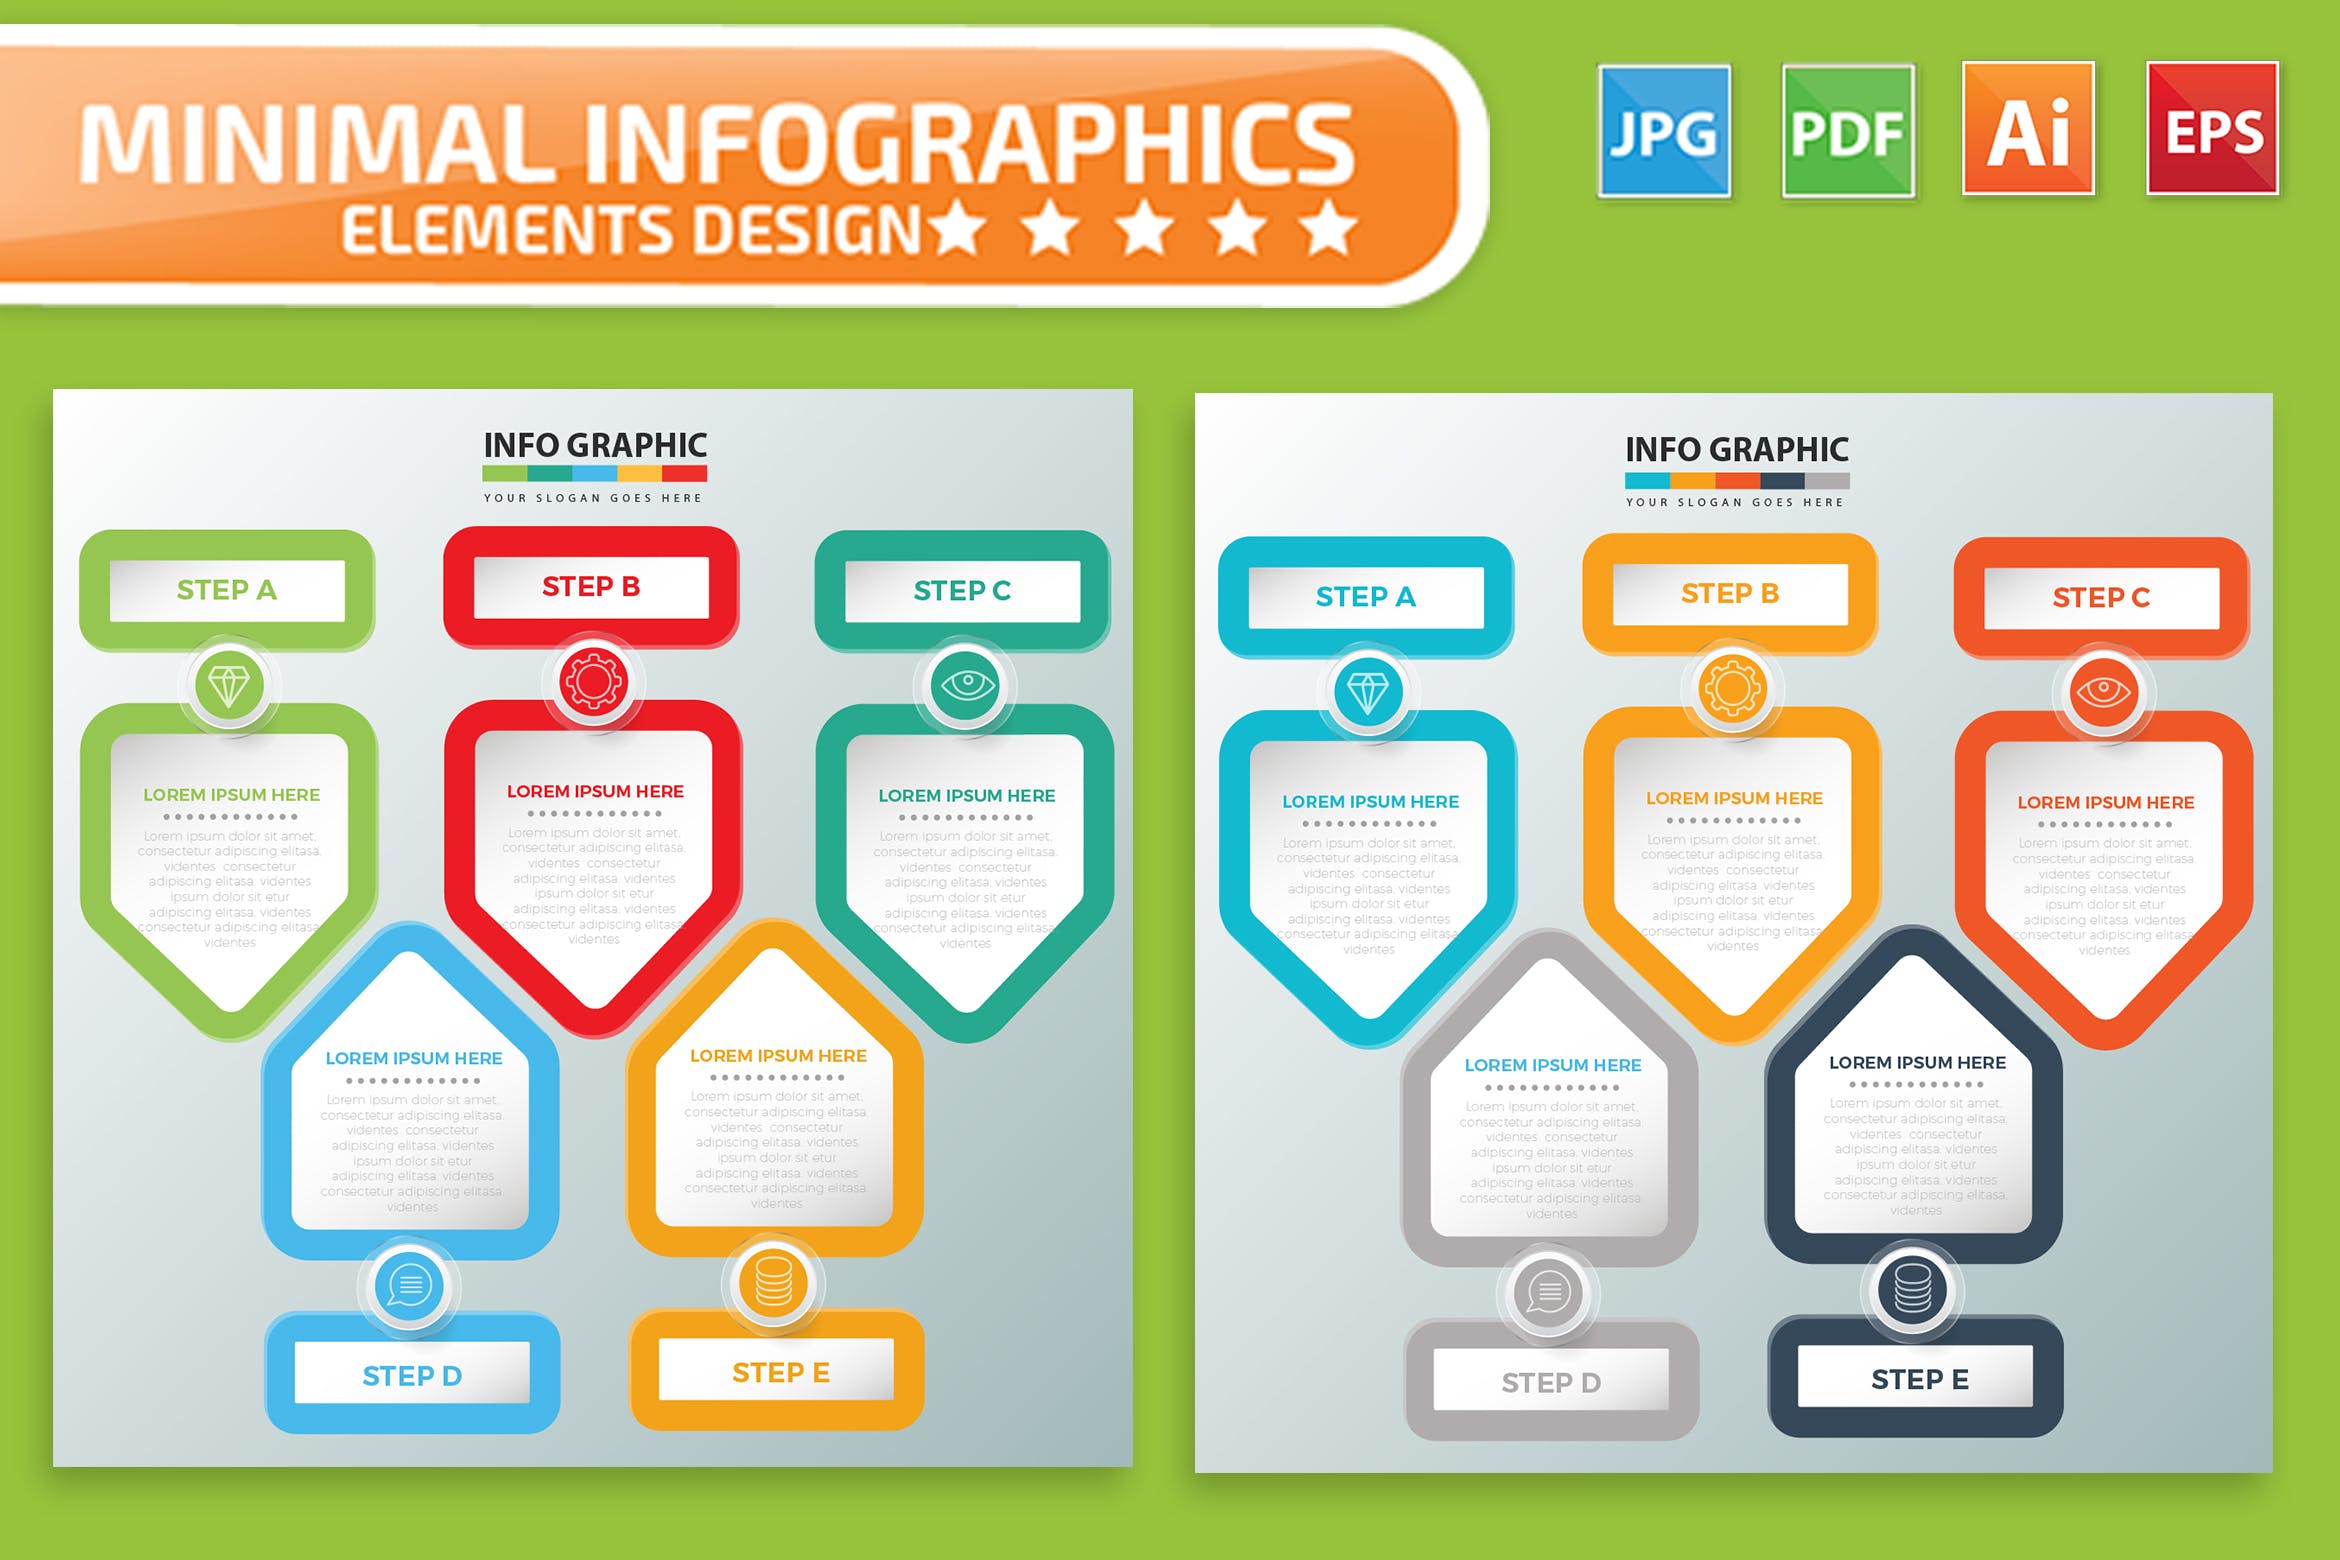 要点说明/重要特征信息图表矢量图形非凡图库精选素材v3 Infographic Elements Design插图